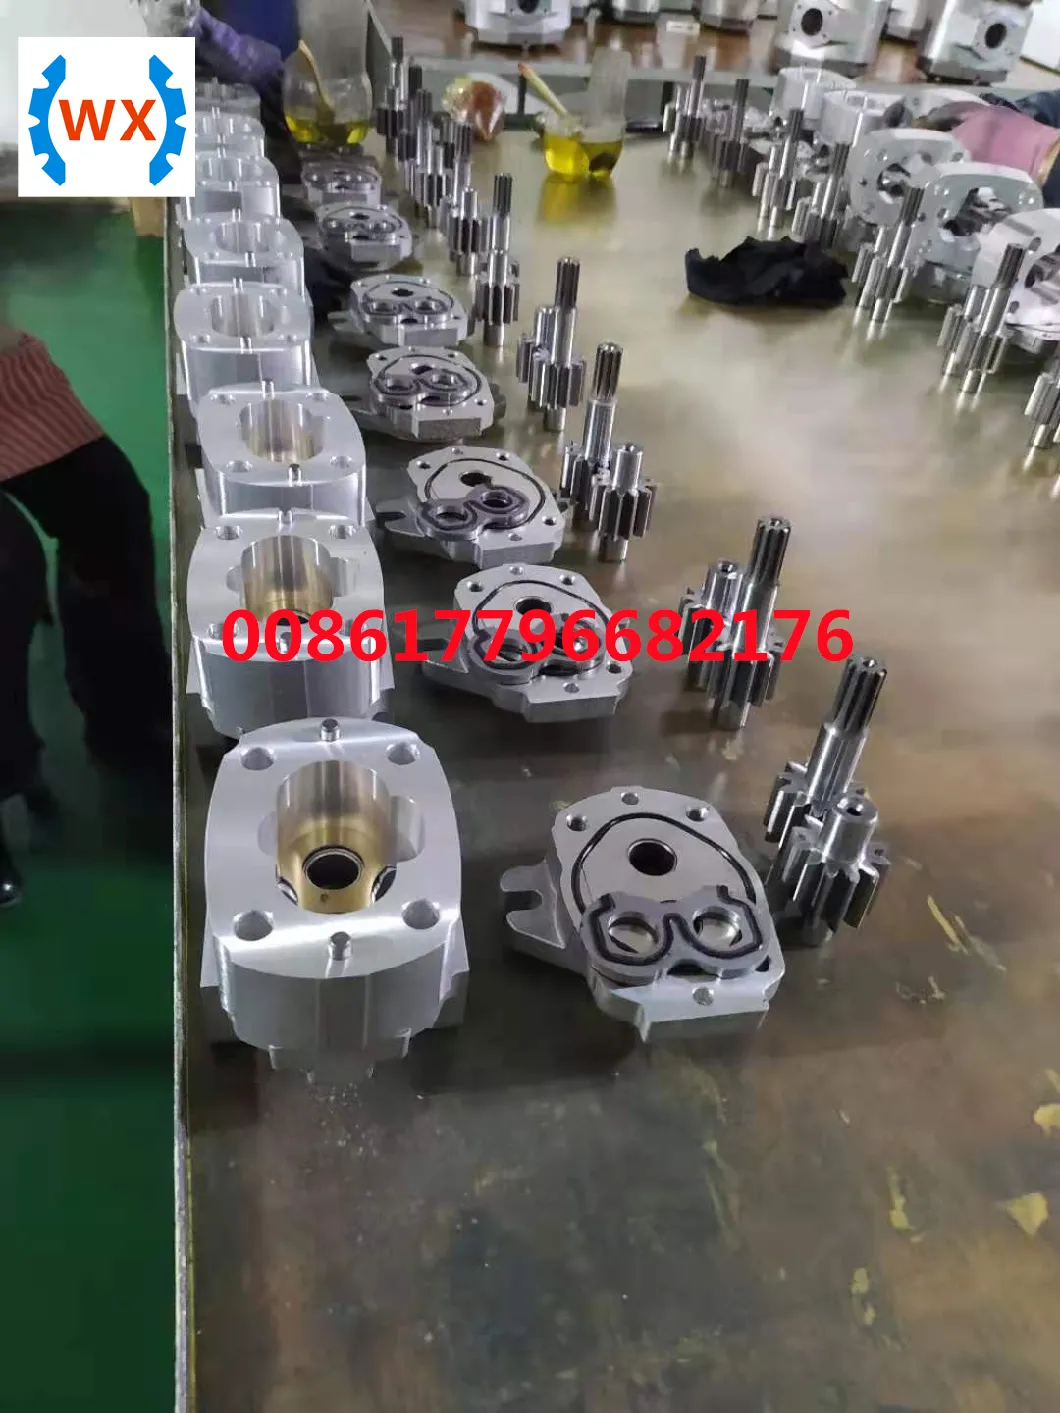 D155ax-3 D135A-1 705-51-30360 705-51-30240 Hydraulic Transmission Gear Oil Pump